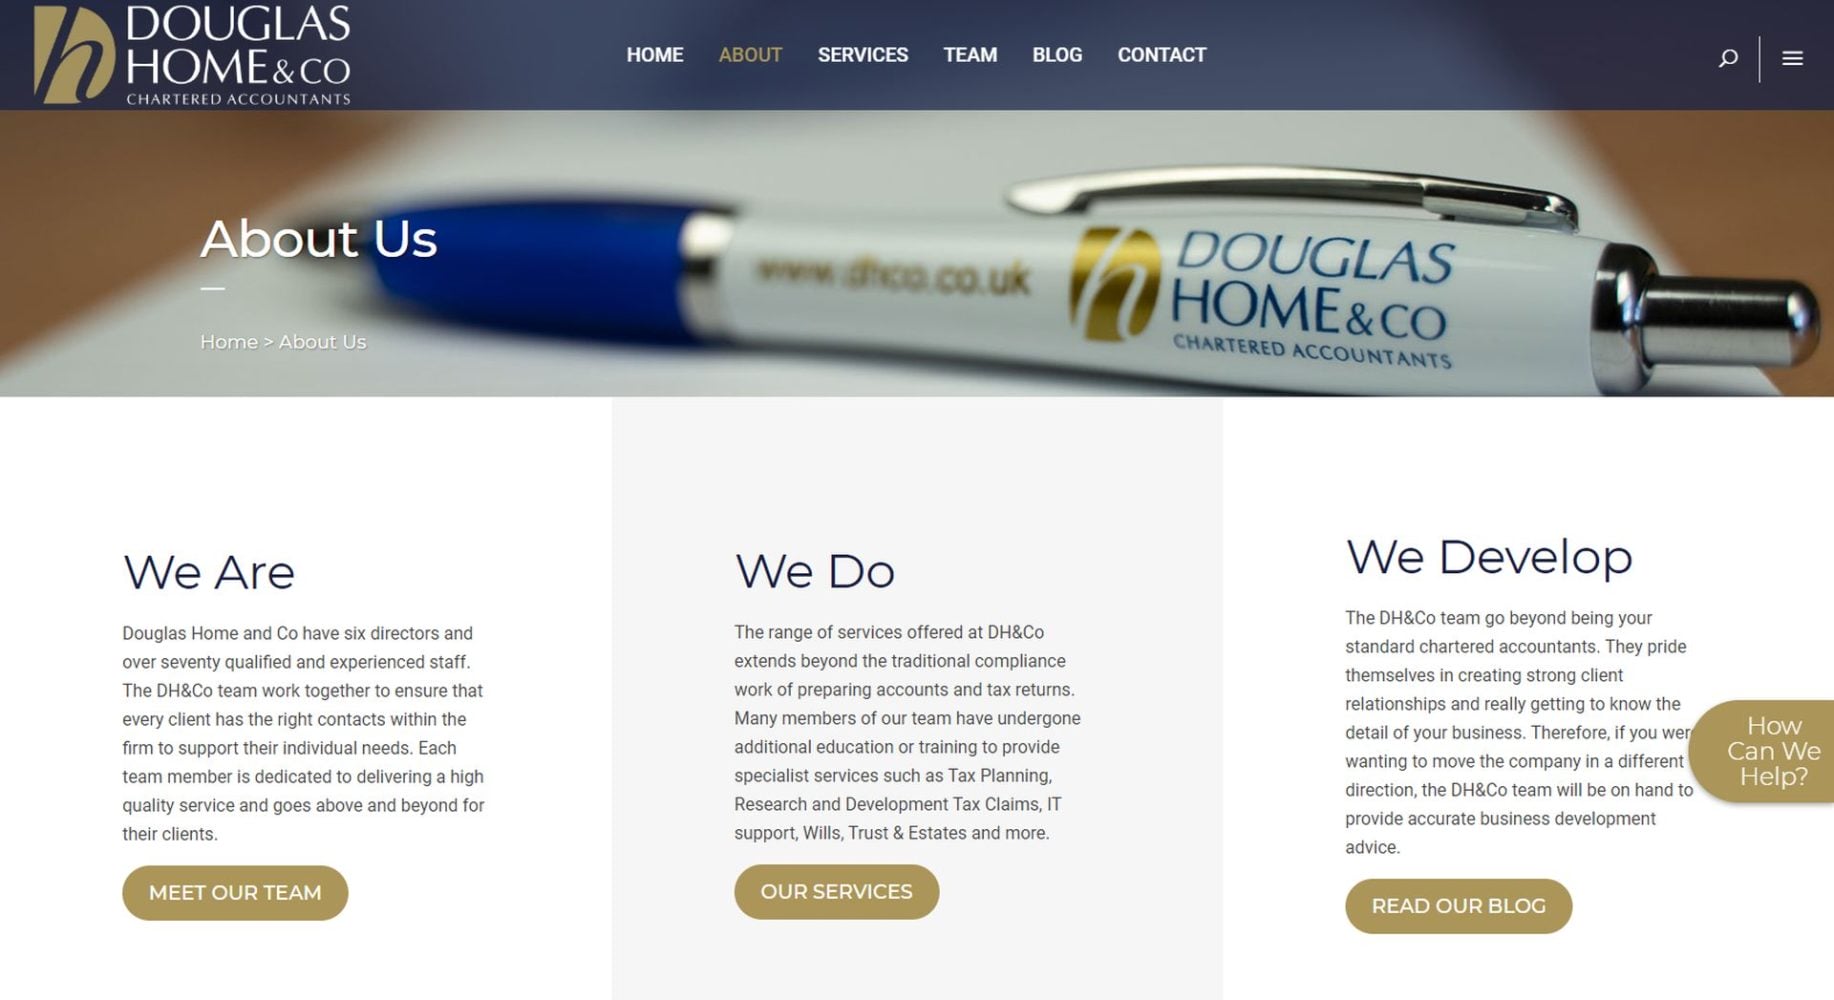 Douglas Home & Co Website Design About Us